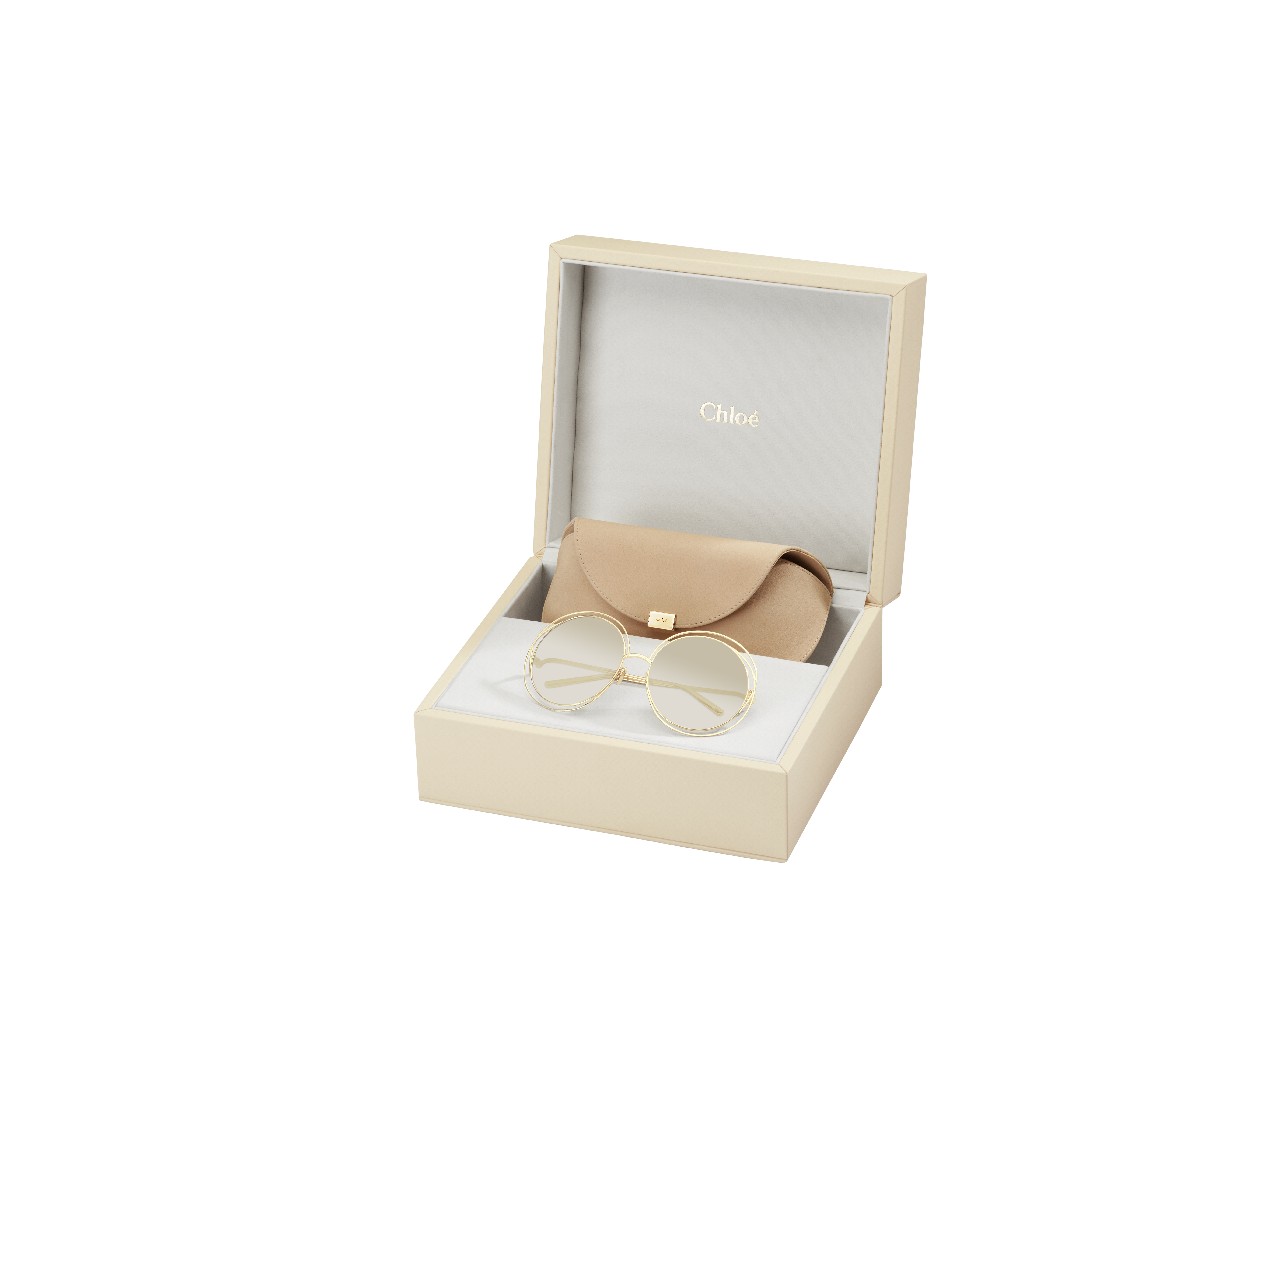 Chloé occhiali da sole 2016: la limited edition in oro dell’iconico modello Carlina